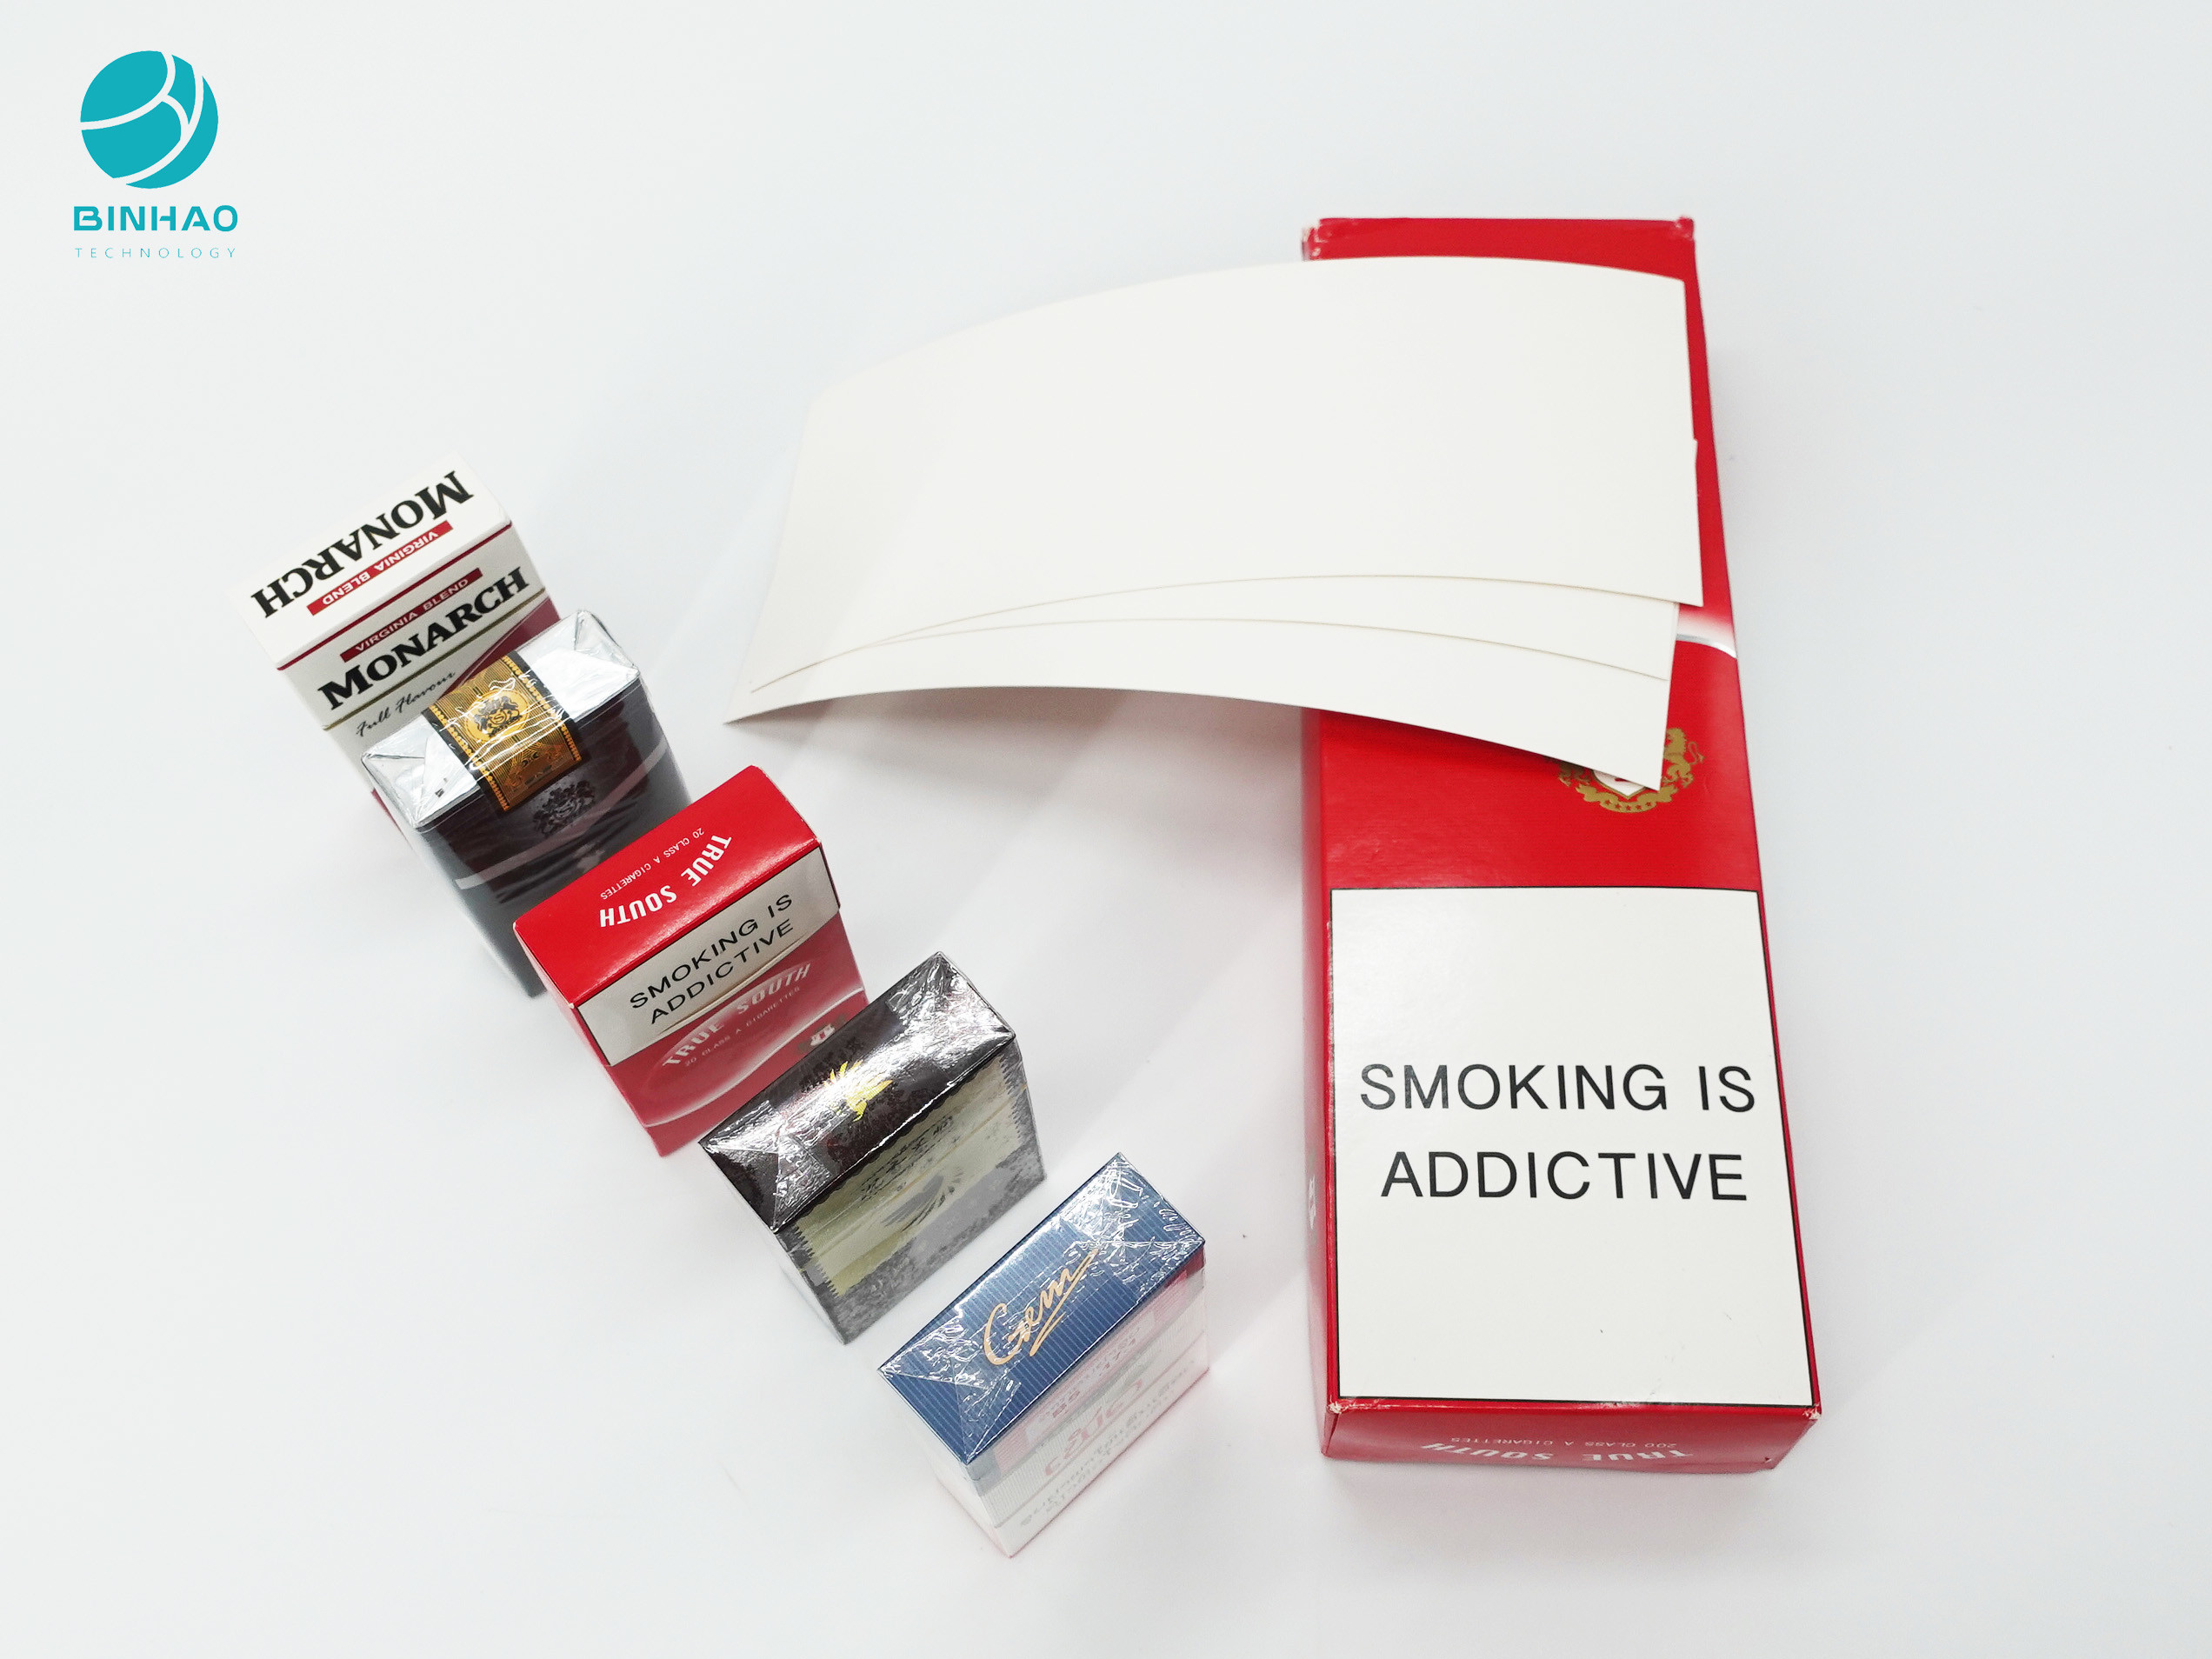 Οι καπνοί συσκευάζουν την περίπτωση τσιγάρων πακέτων με το πλήρες προσαρμοσμένο cOem σχέδιο χρώματος